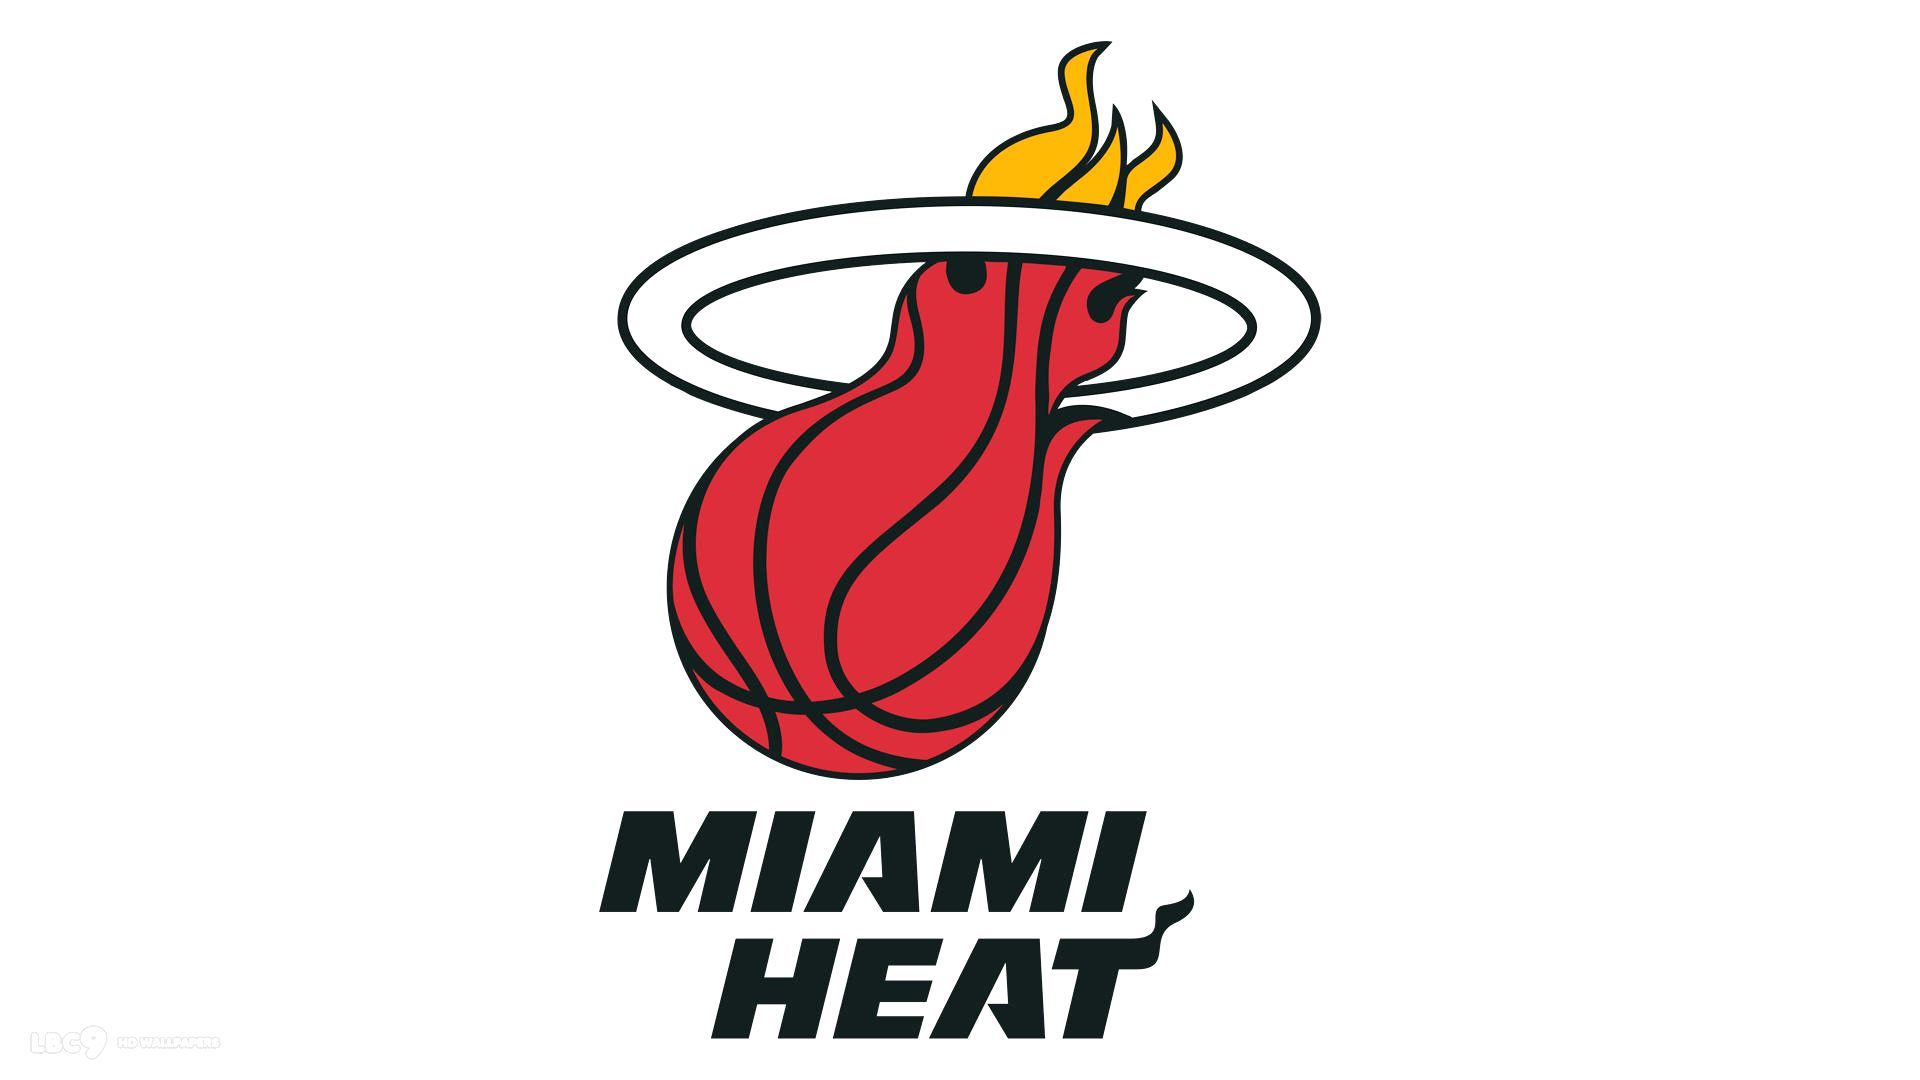 Miami Heat HD Wallpaper On